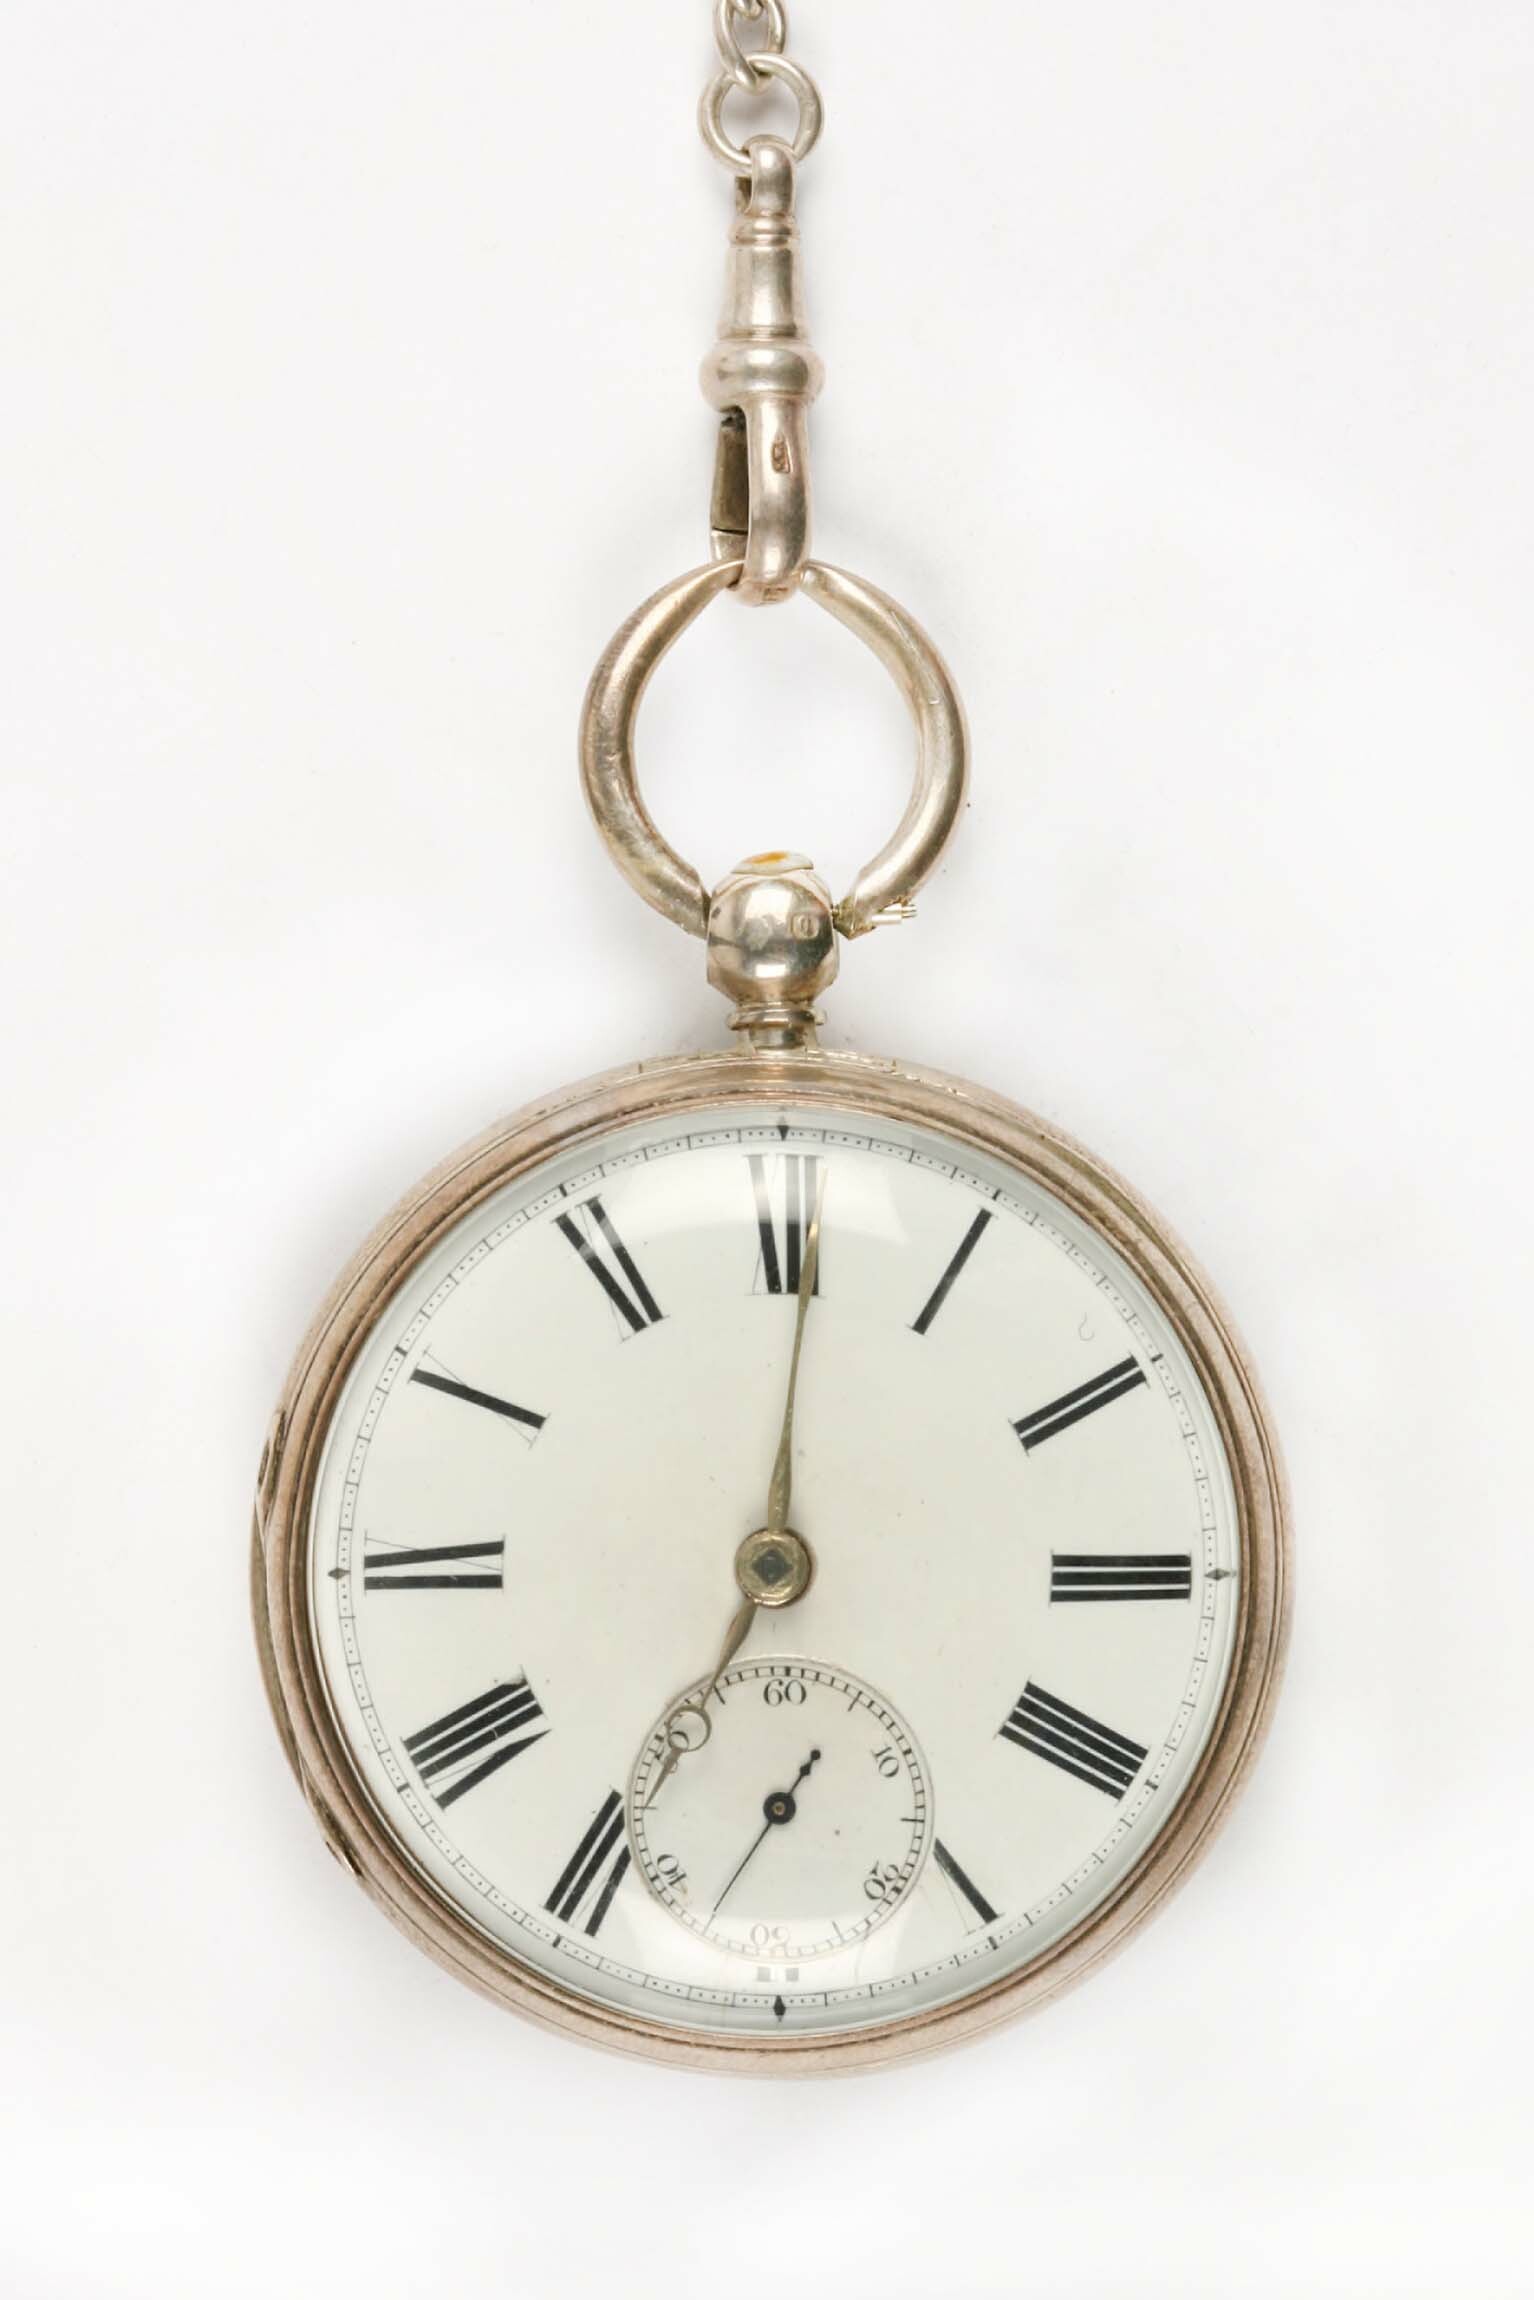 Taschenuhr, Beha, Schwerer und Co., Norwich, um 1870 (Deutsches Uhrenmuseum CC BY-SA)